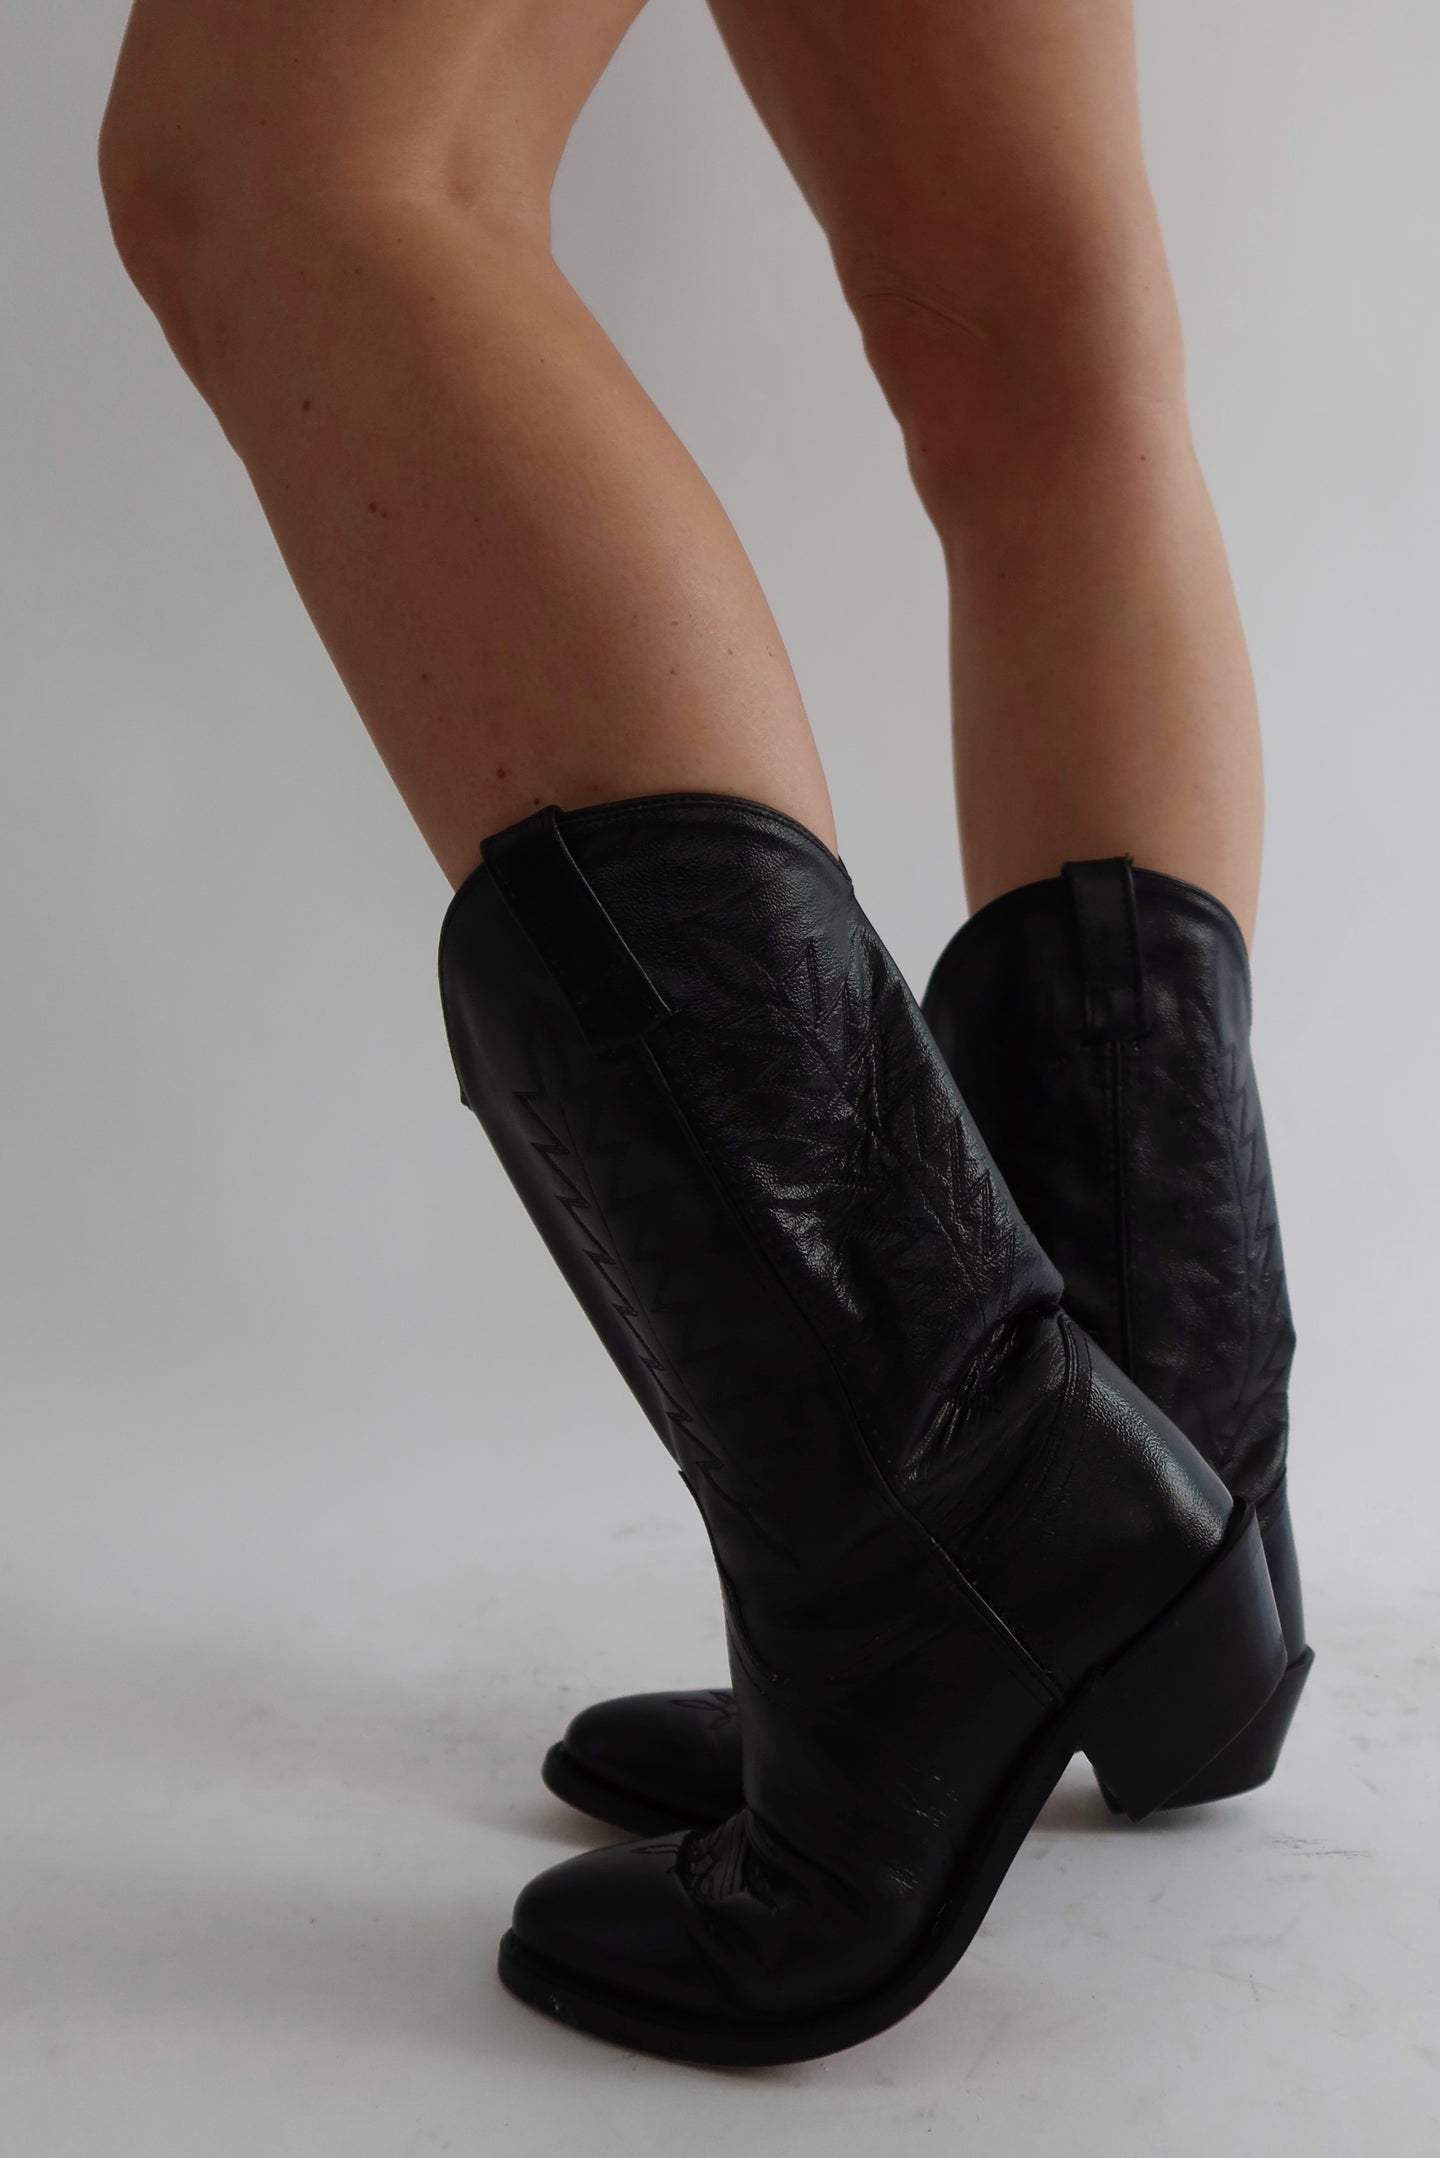 Black Cowboy Boots (8)